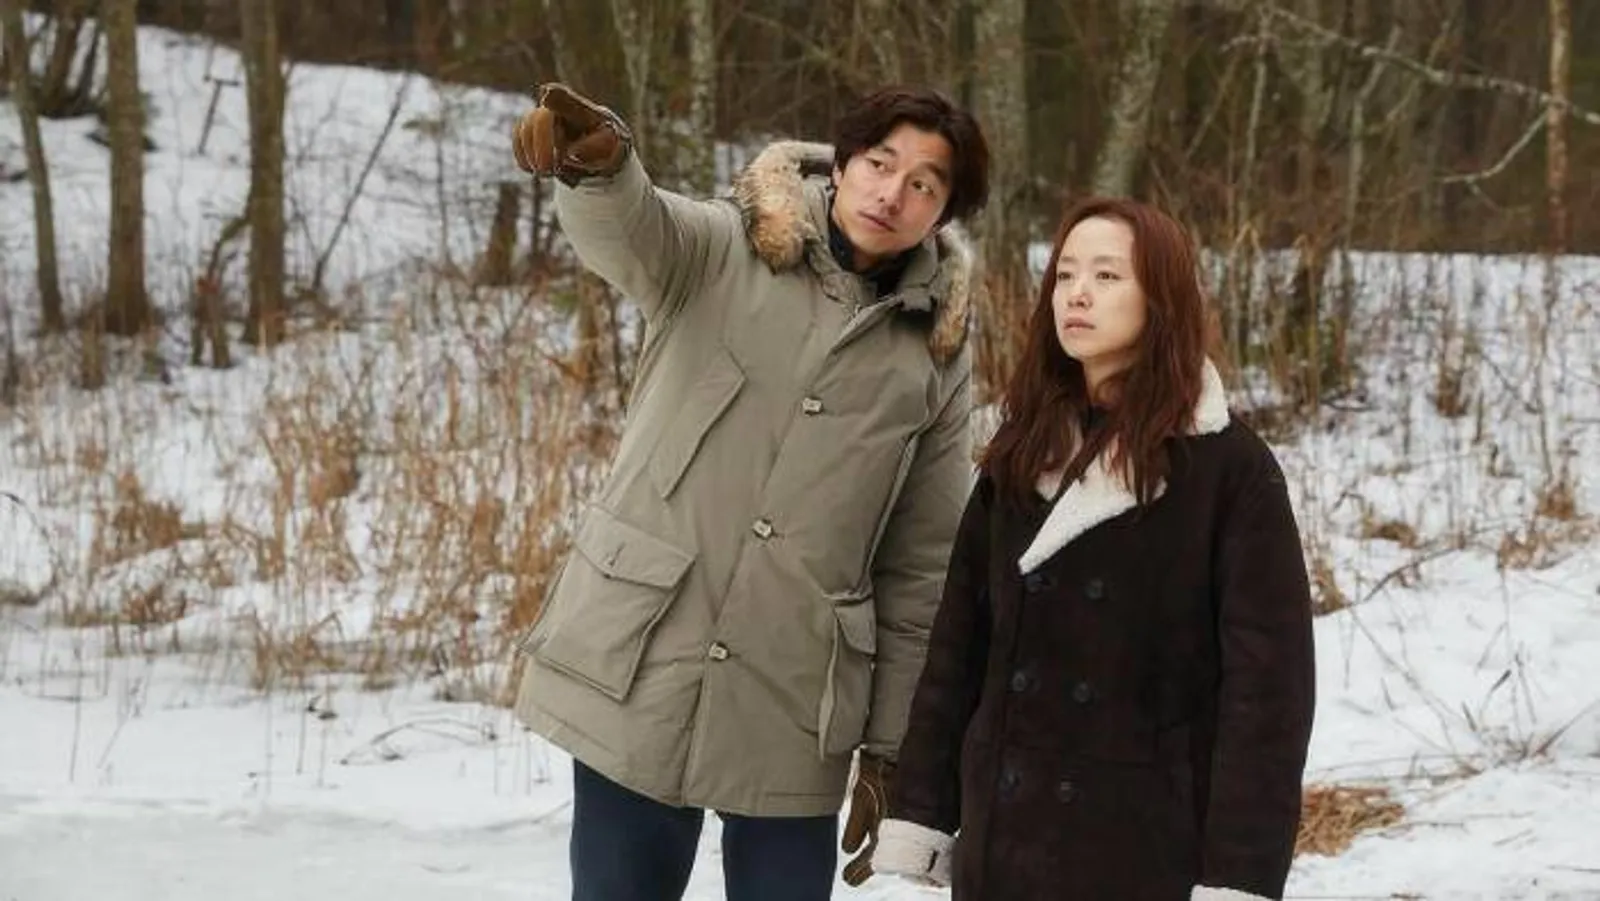 10 Film Korea Tentang Perselingkuhan, Penuh Intrik Menguras Emosi!